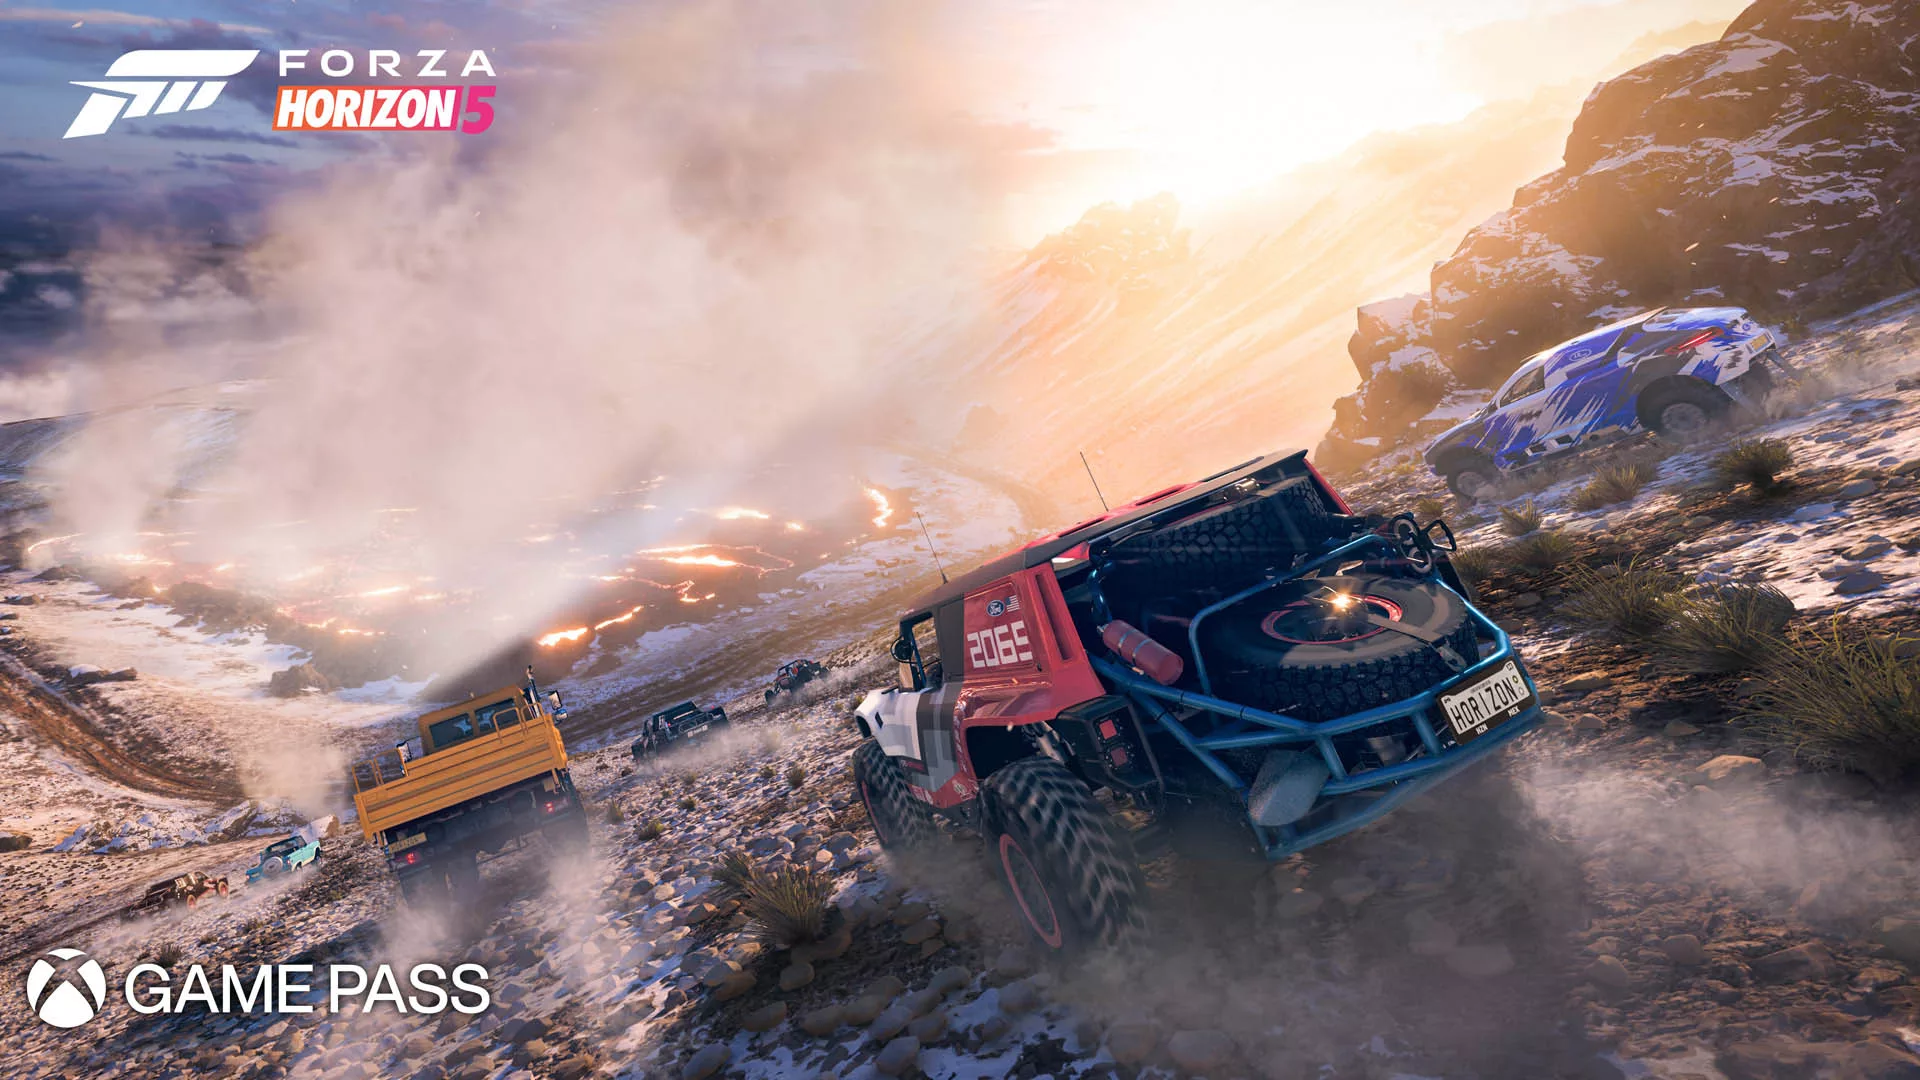 Ein Werbebild für den Xbox Game Pass und Forza Horizon 5, das Lastwagen zeigt, die offroad durch eine Sandwüste rasen.